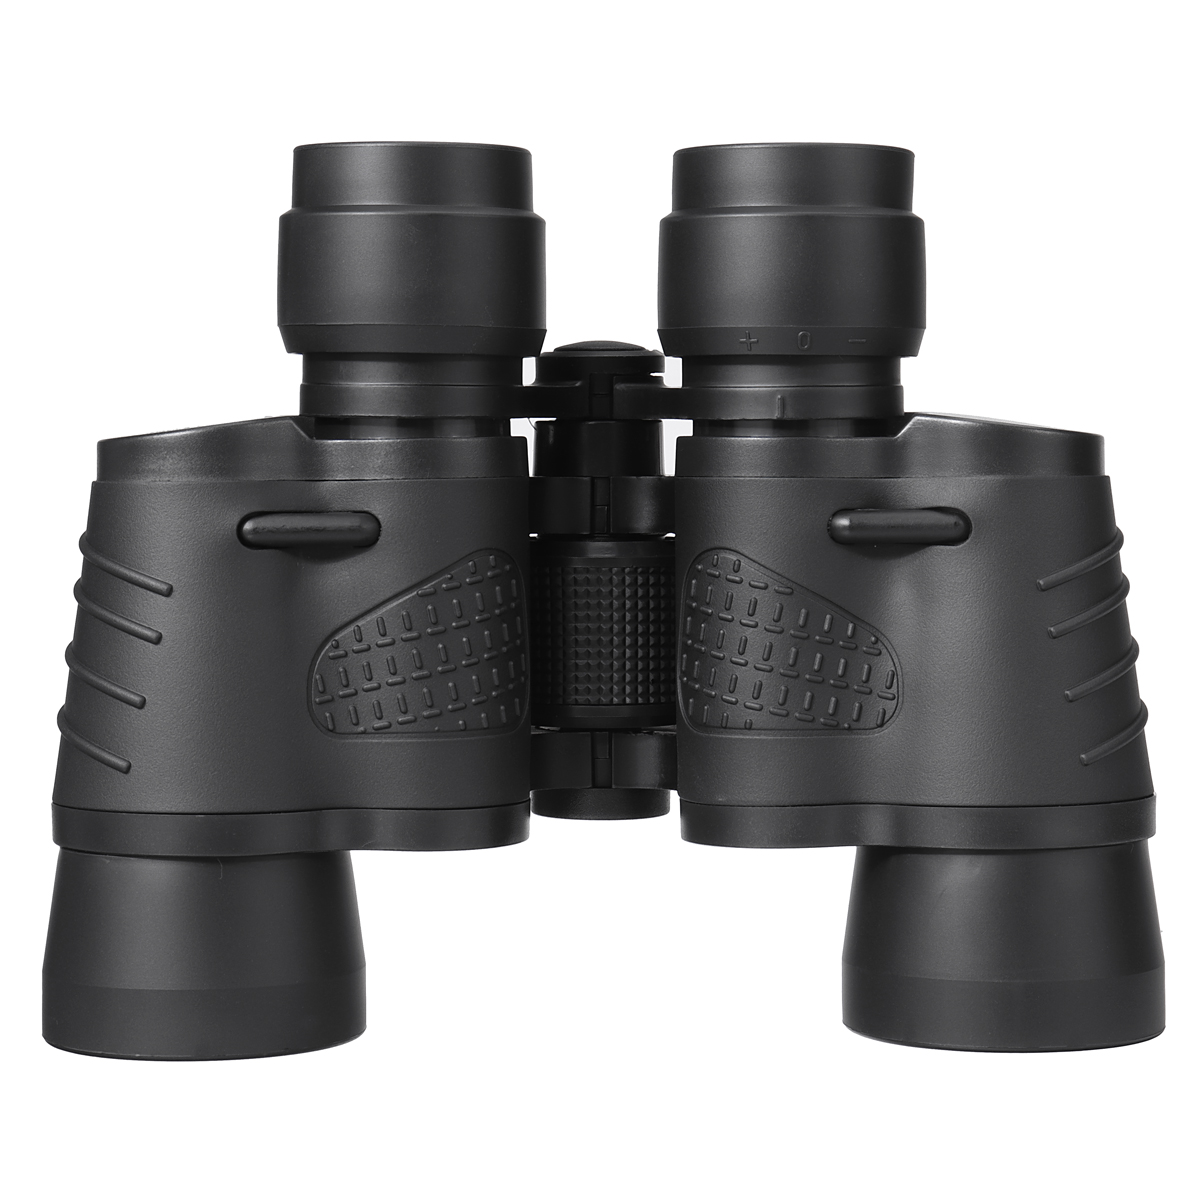 80X80-Binoculars-Film-Plated-Objective-Lens-Low-Light-Zoom-Binoculars-For-Bird-Watching-Outdoor-Camp-1936006-11